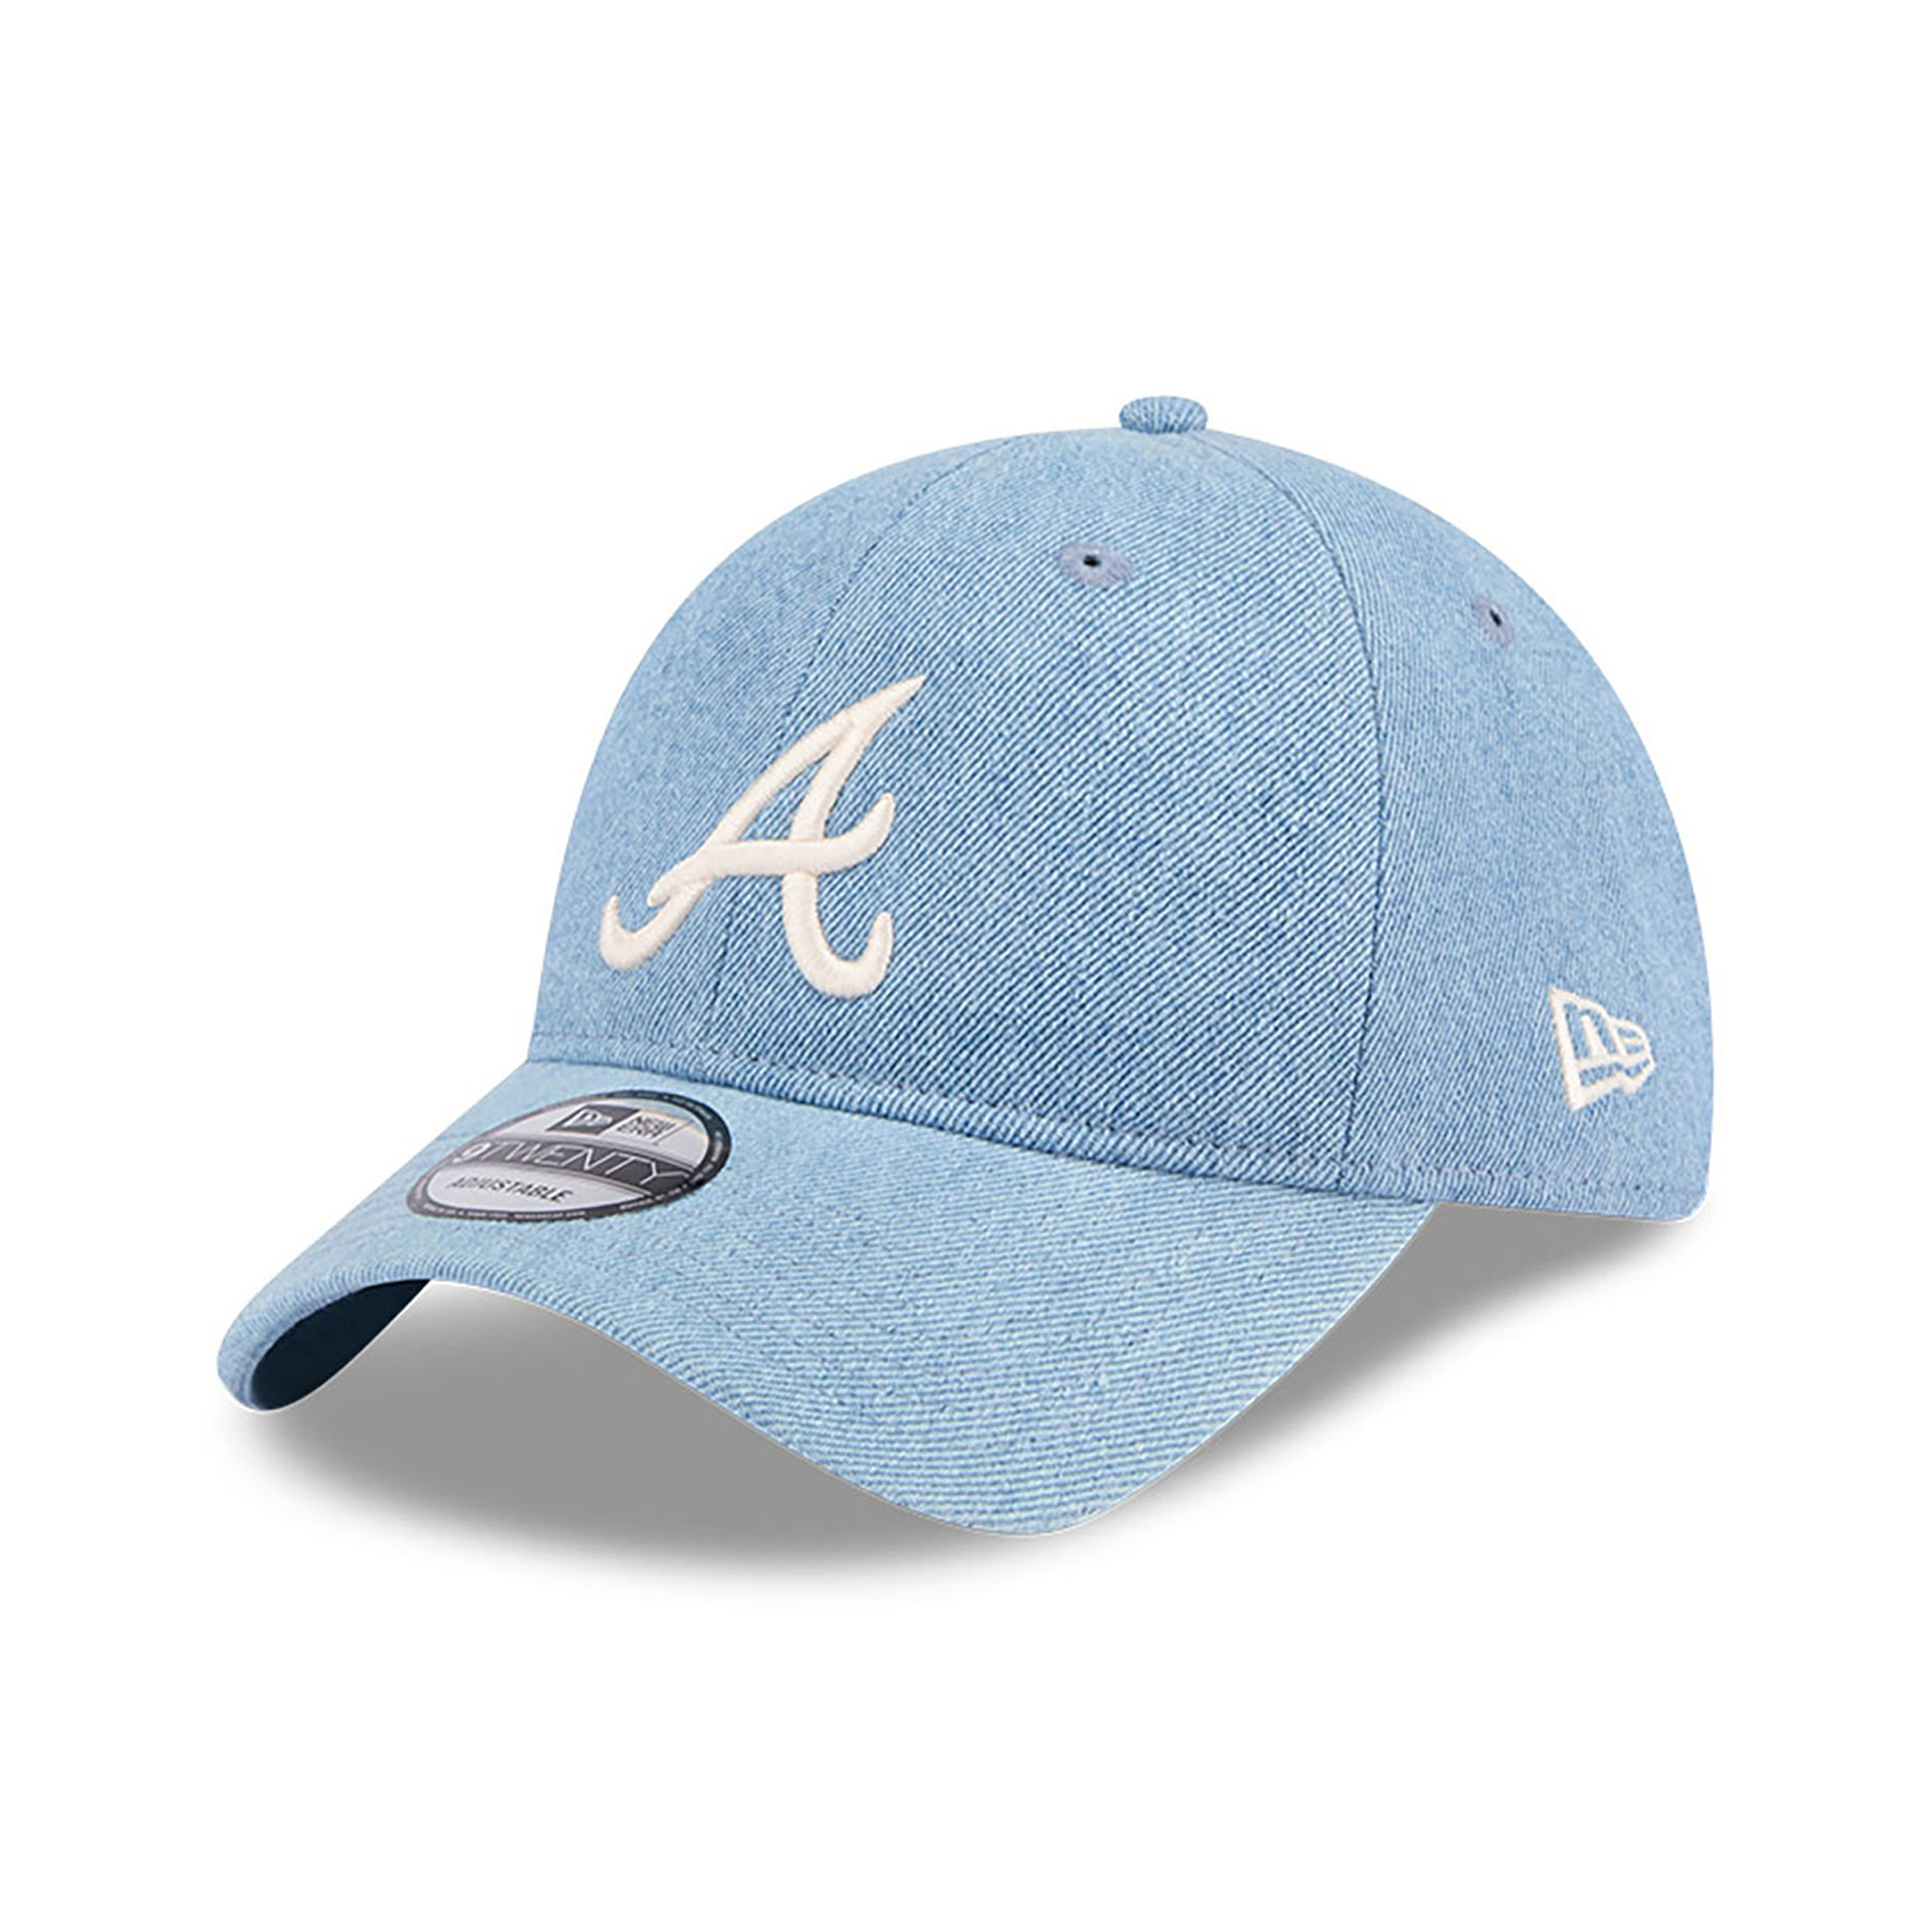 Atlanta Braves Washed Denim Light Blue 9TWENTY Adjustable Cap